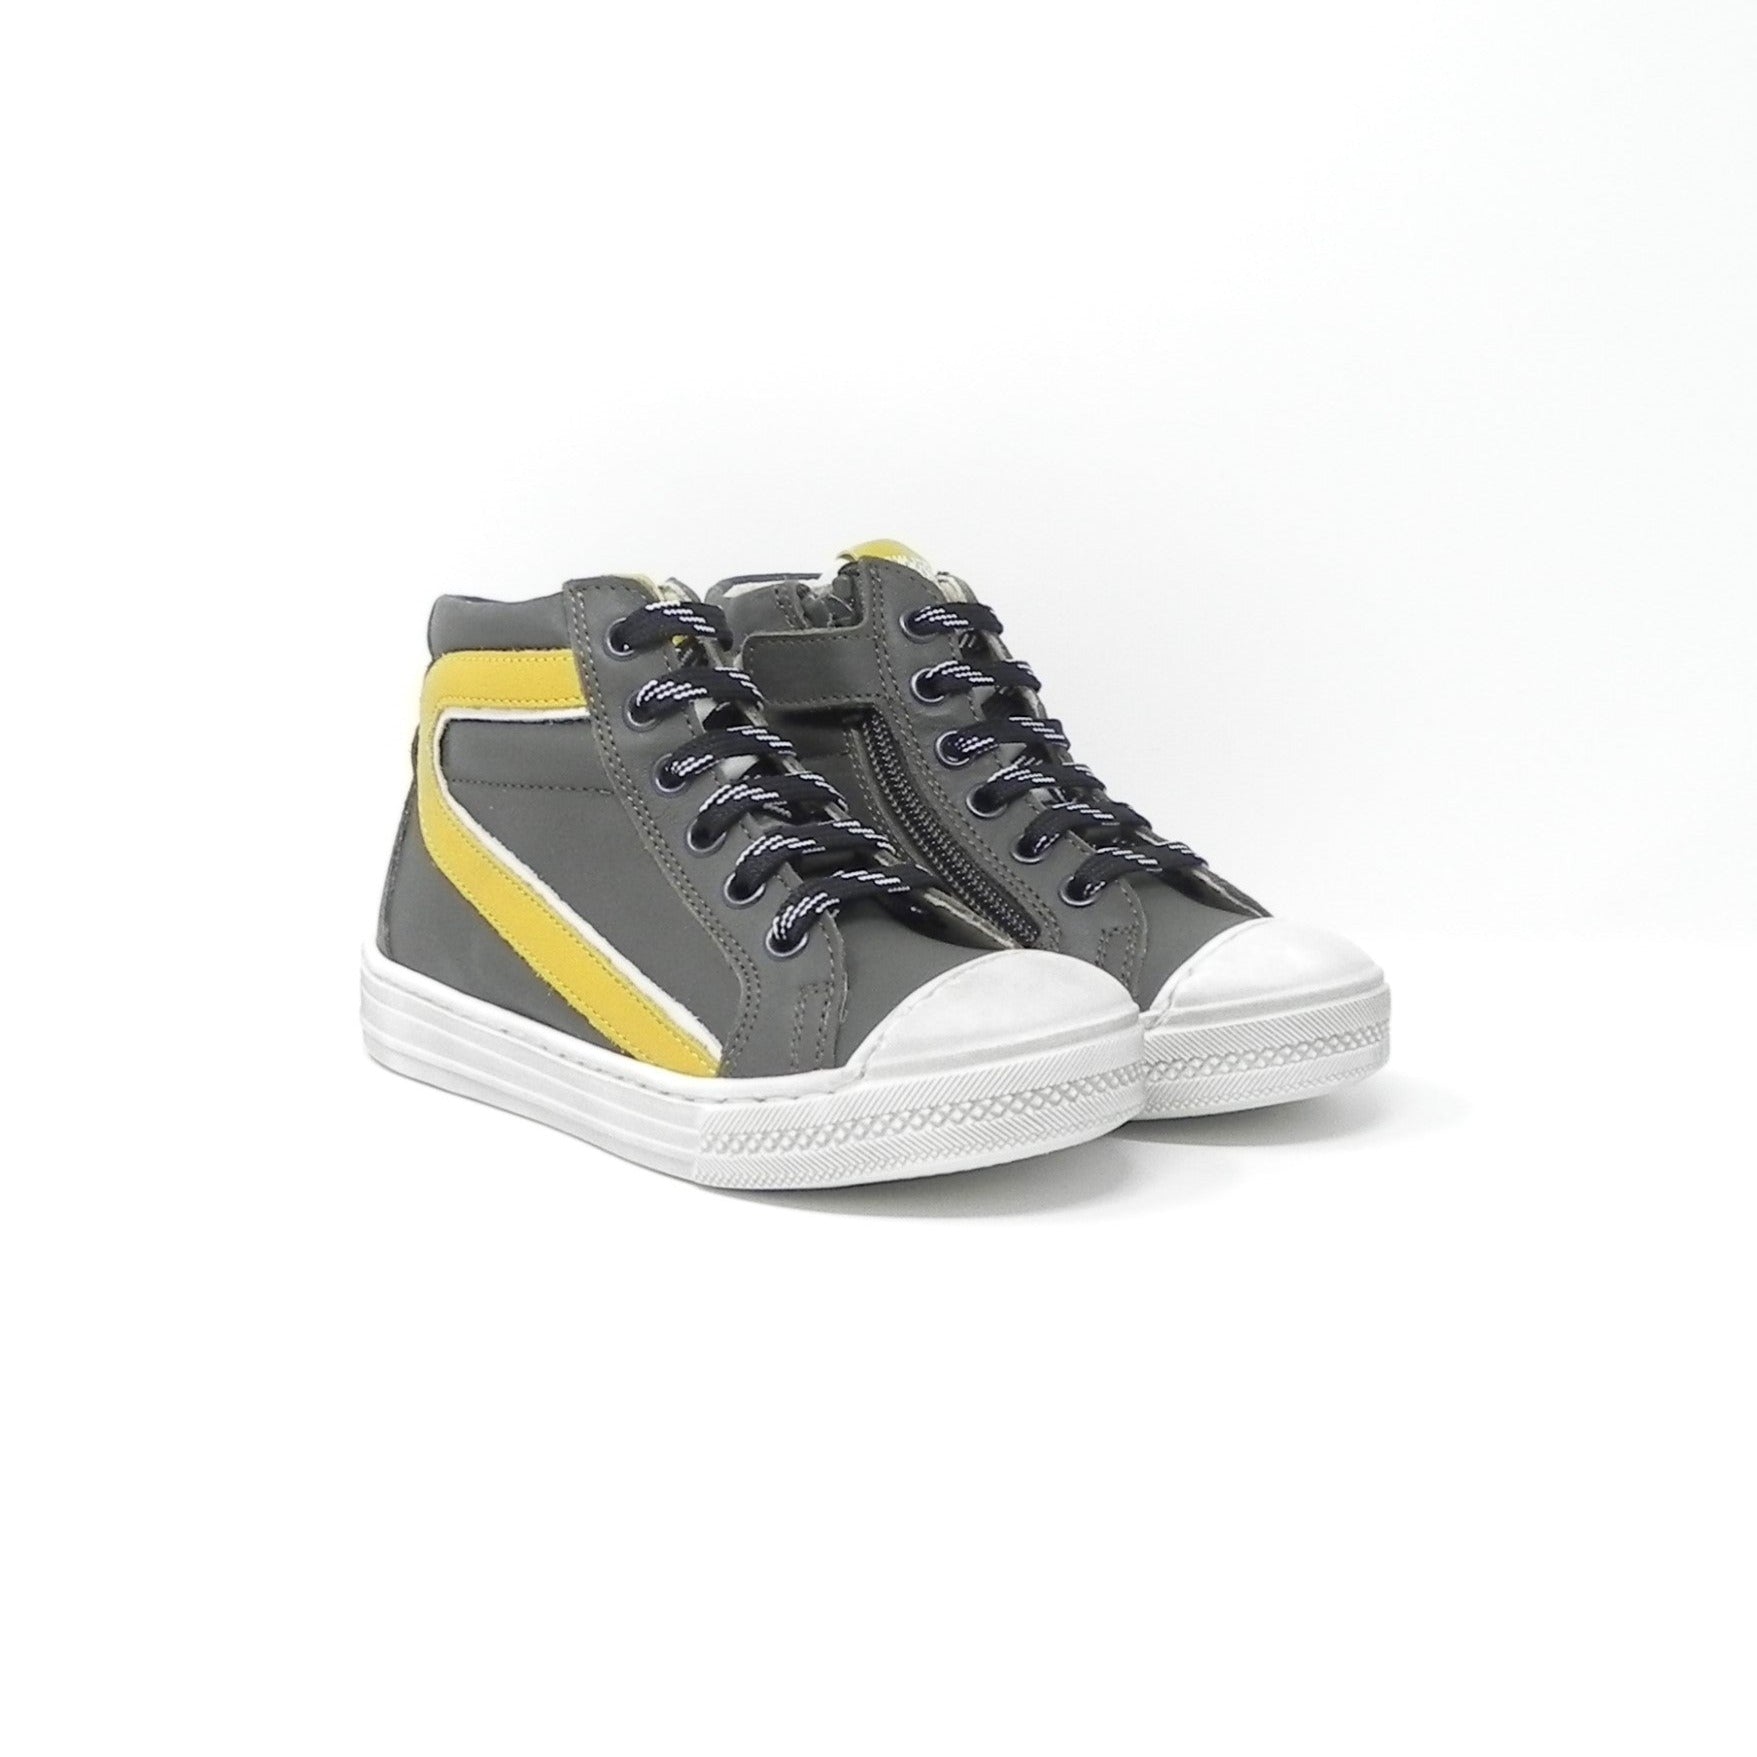 CIAO BIMBI SHOES - Sneakers Alta